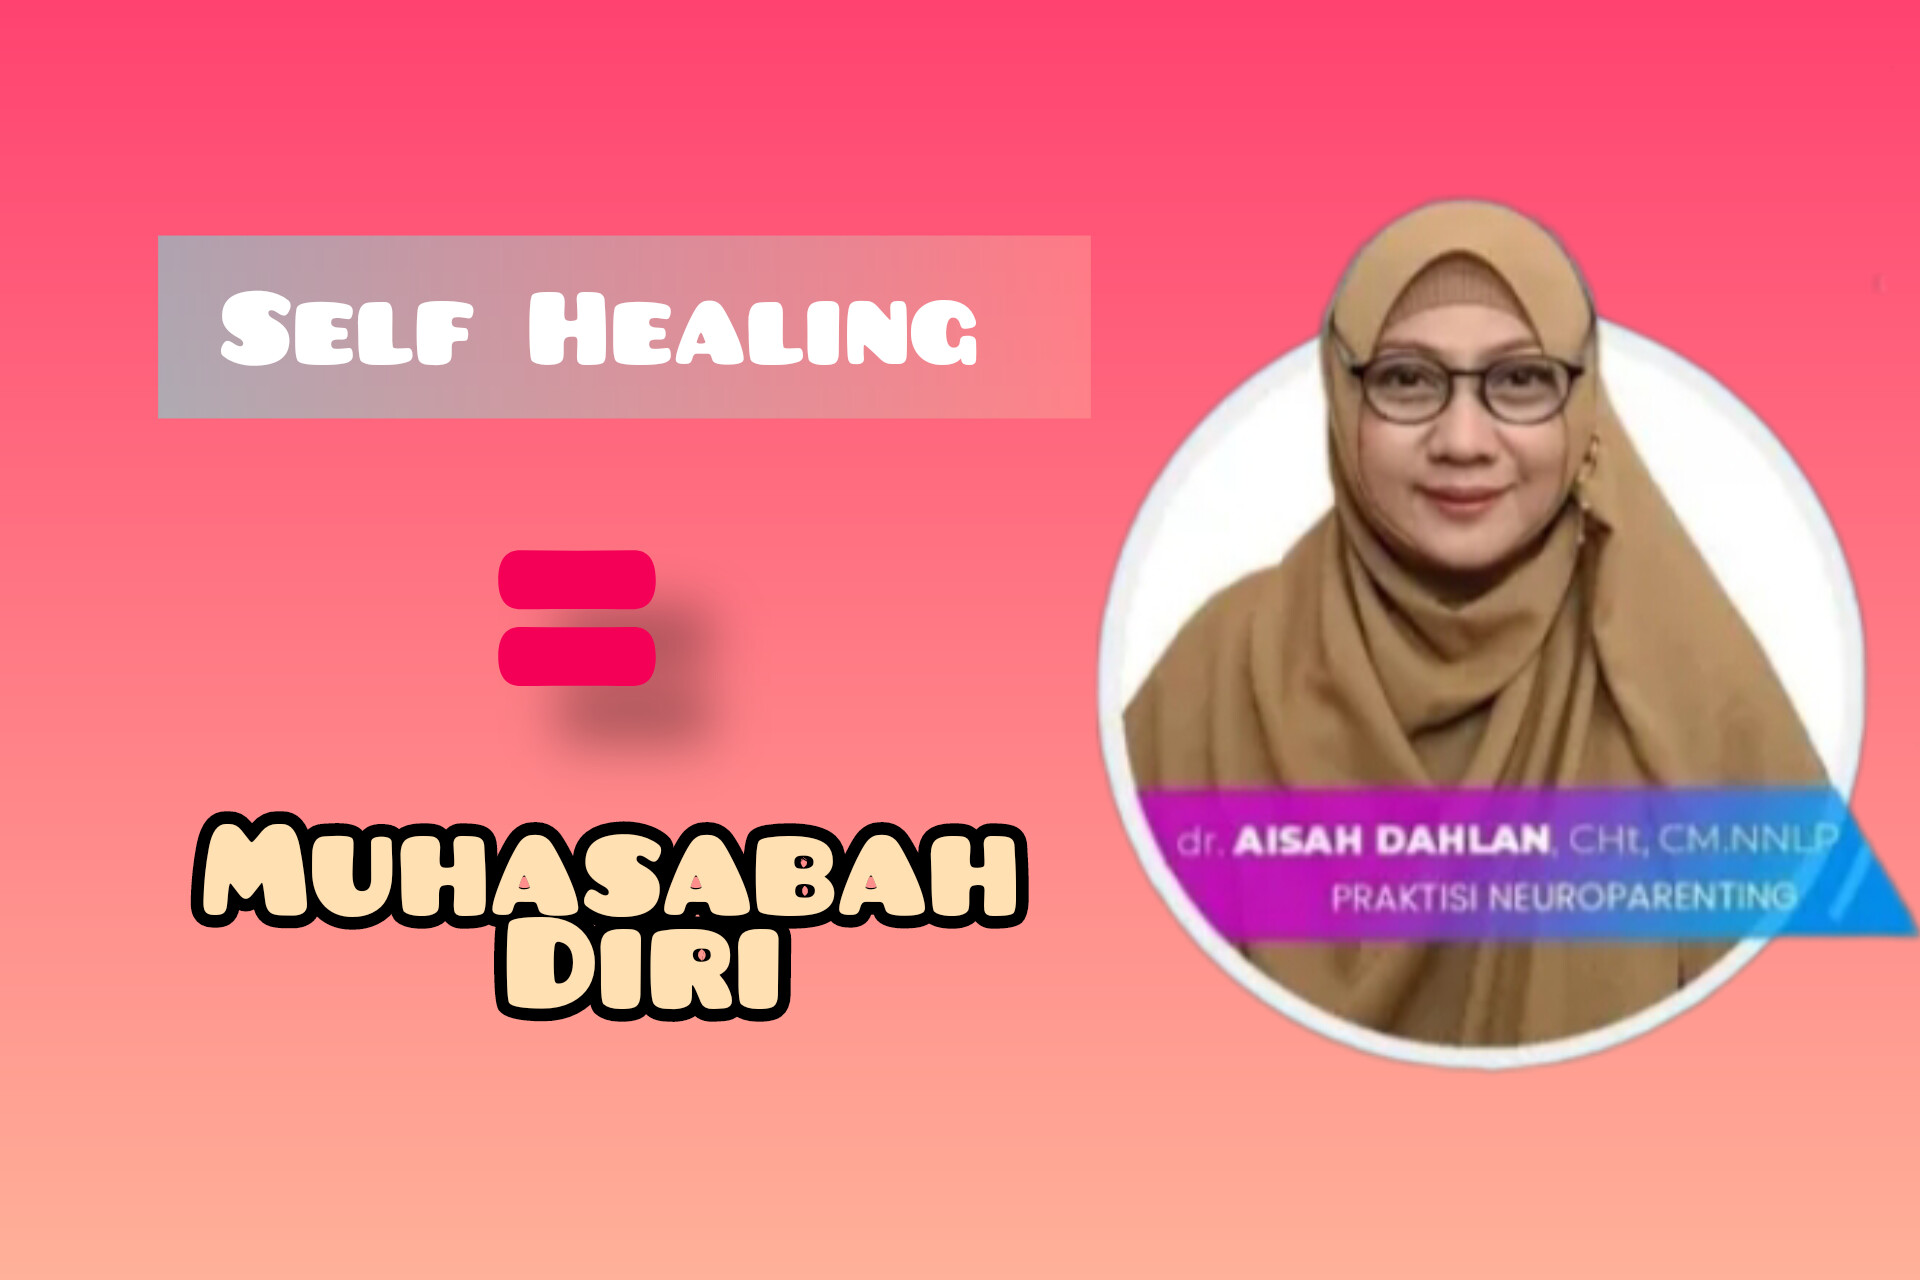 Self Healing: Muhasabah sebagai Bentuk Self Healing dalam Islam Menurut dr Aisah Dahlan, Bagaimana Caranya?